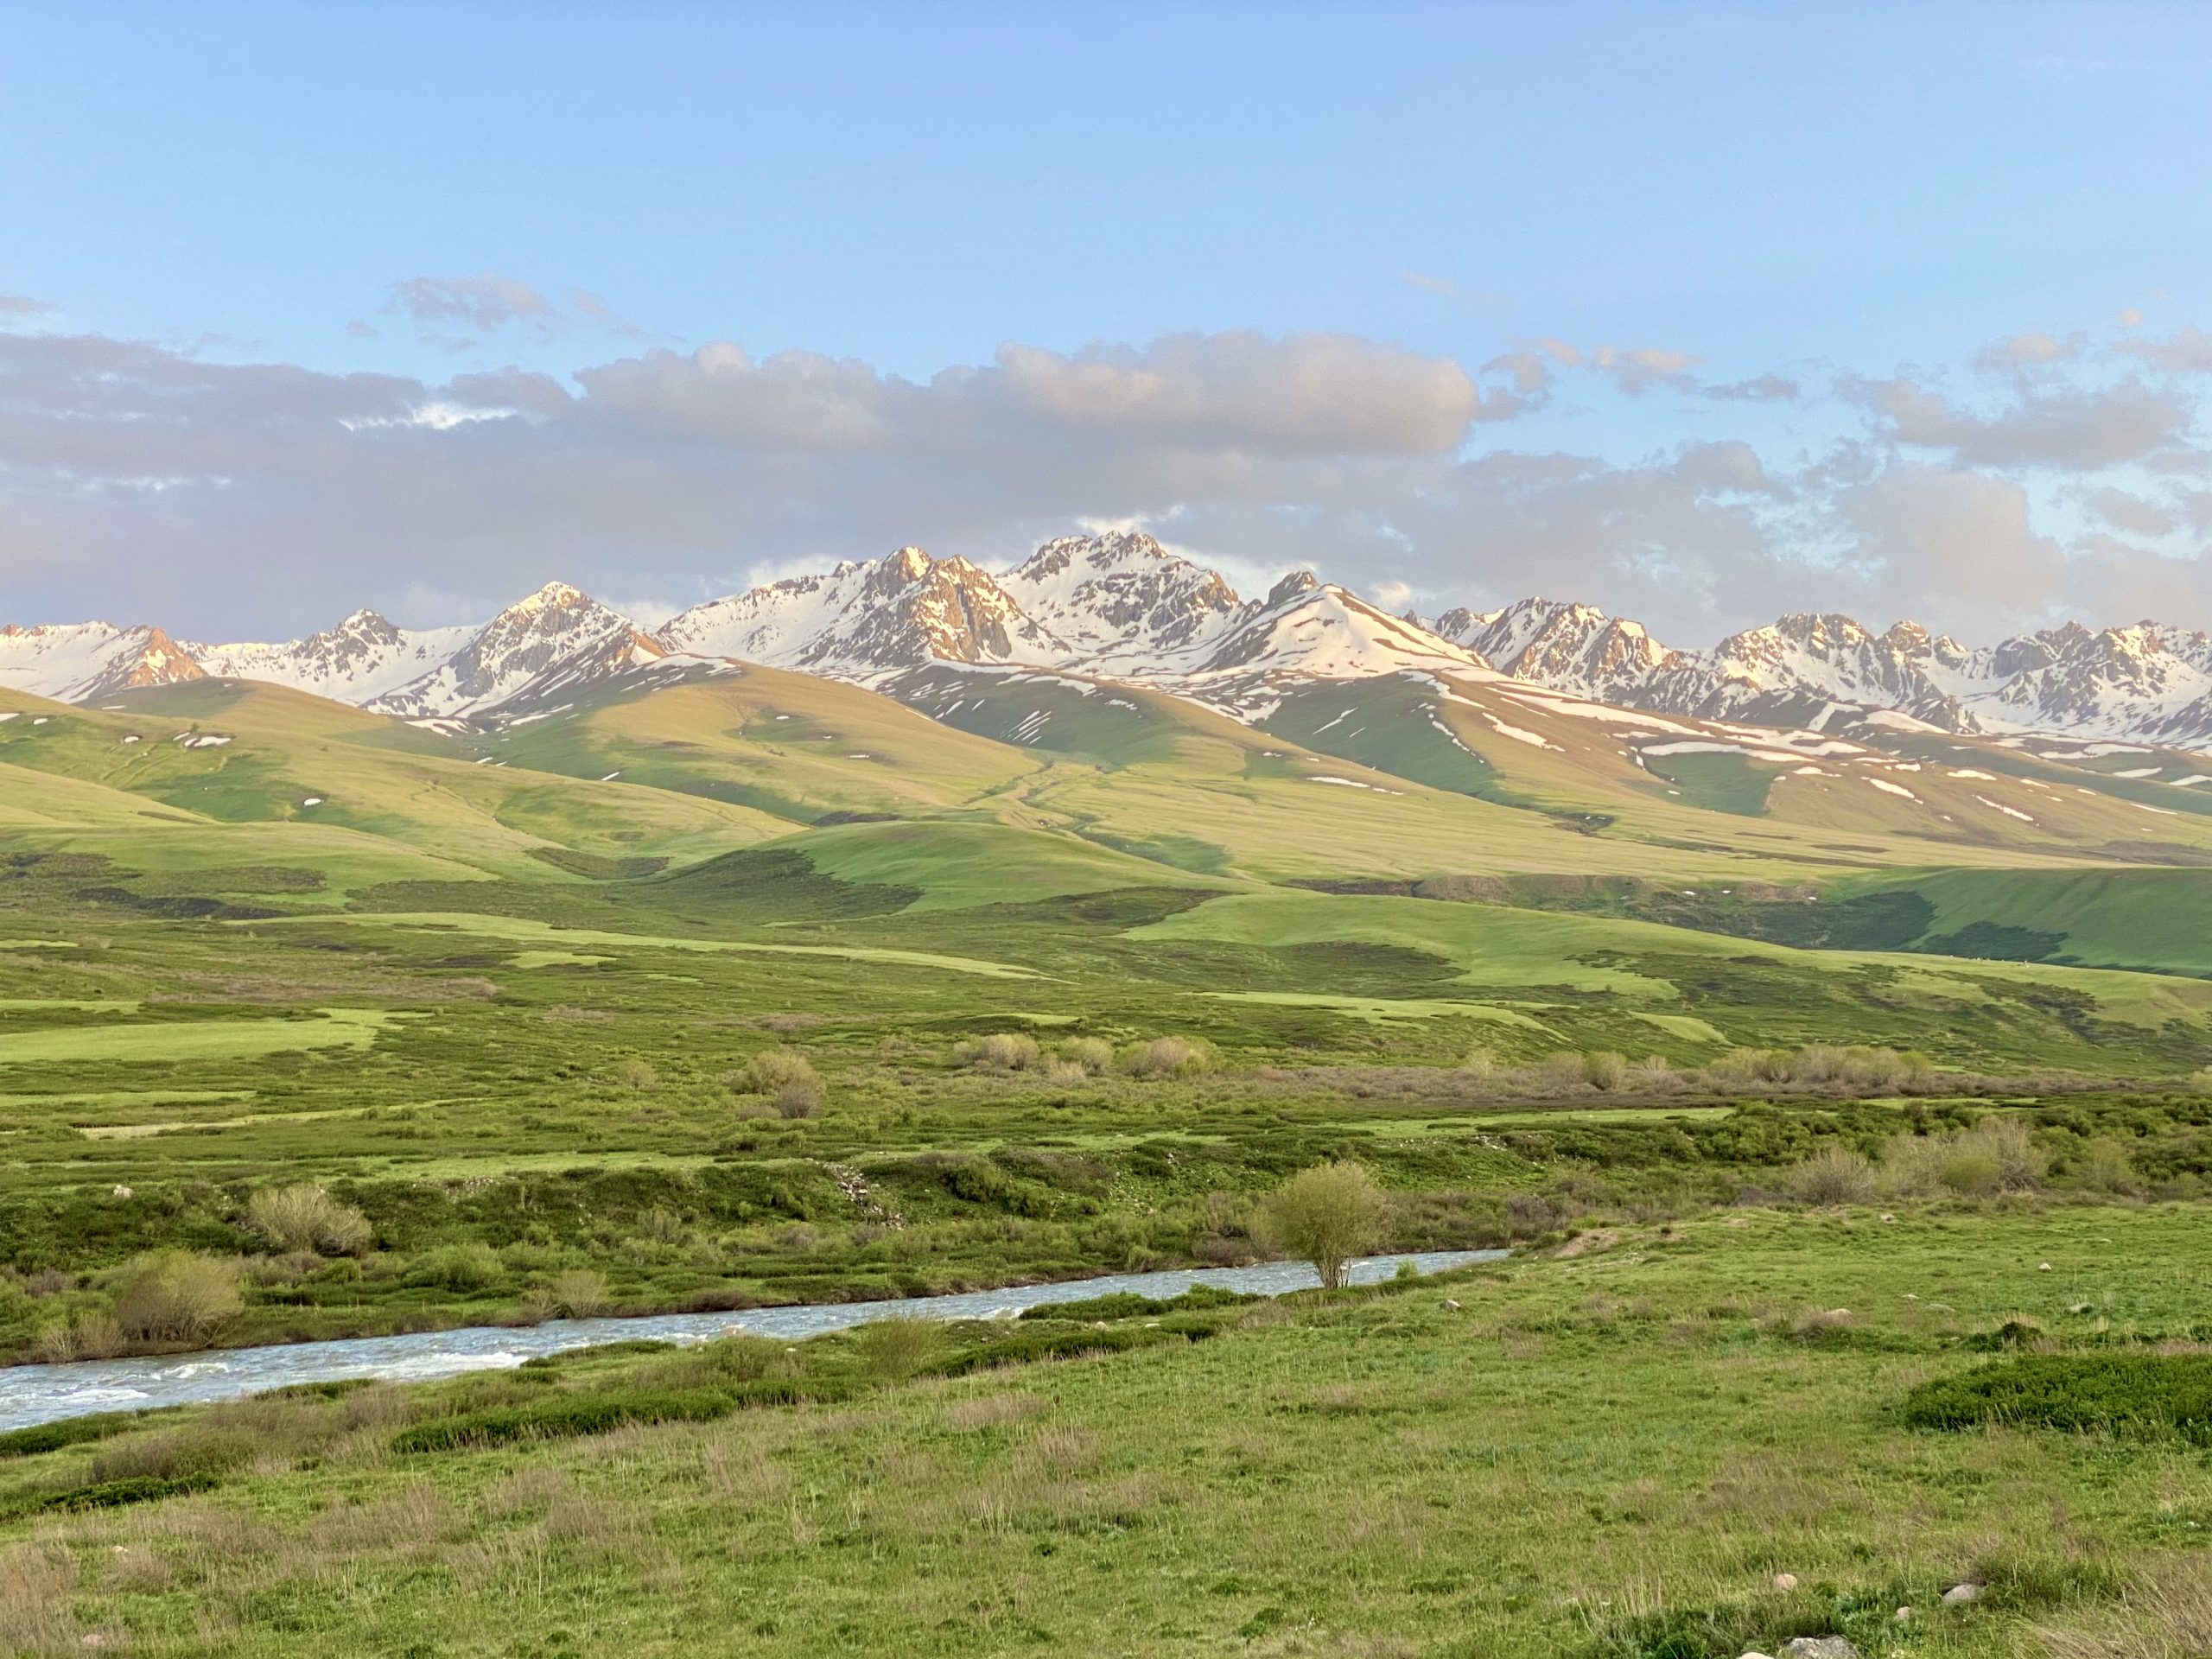 Le Kirghizistan, contrée méconnue d’Asie centrale où j’ai laissé un bout de mon cœur